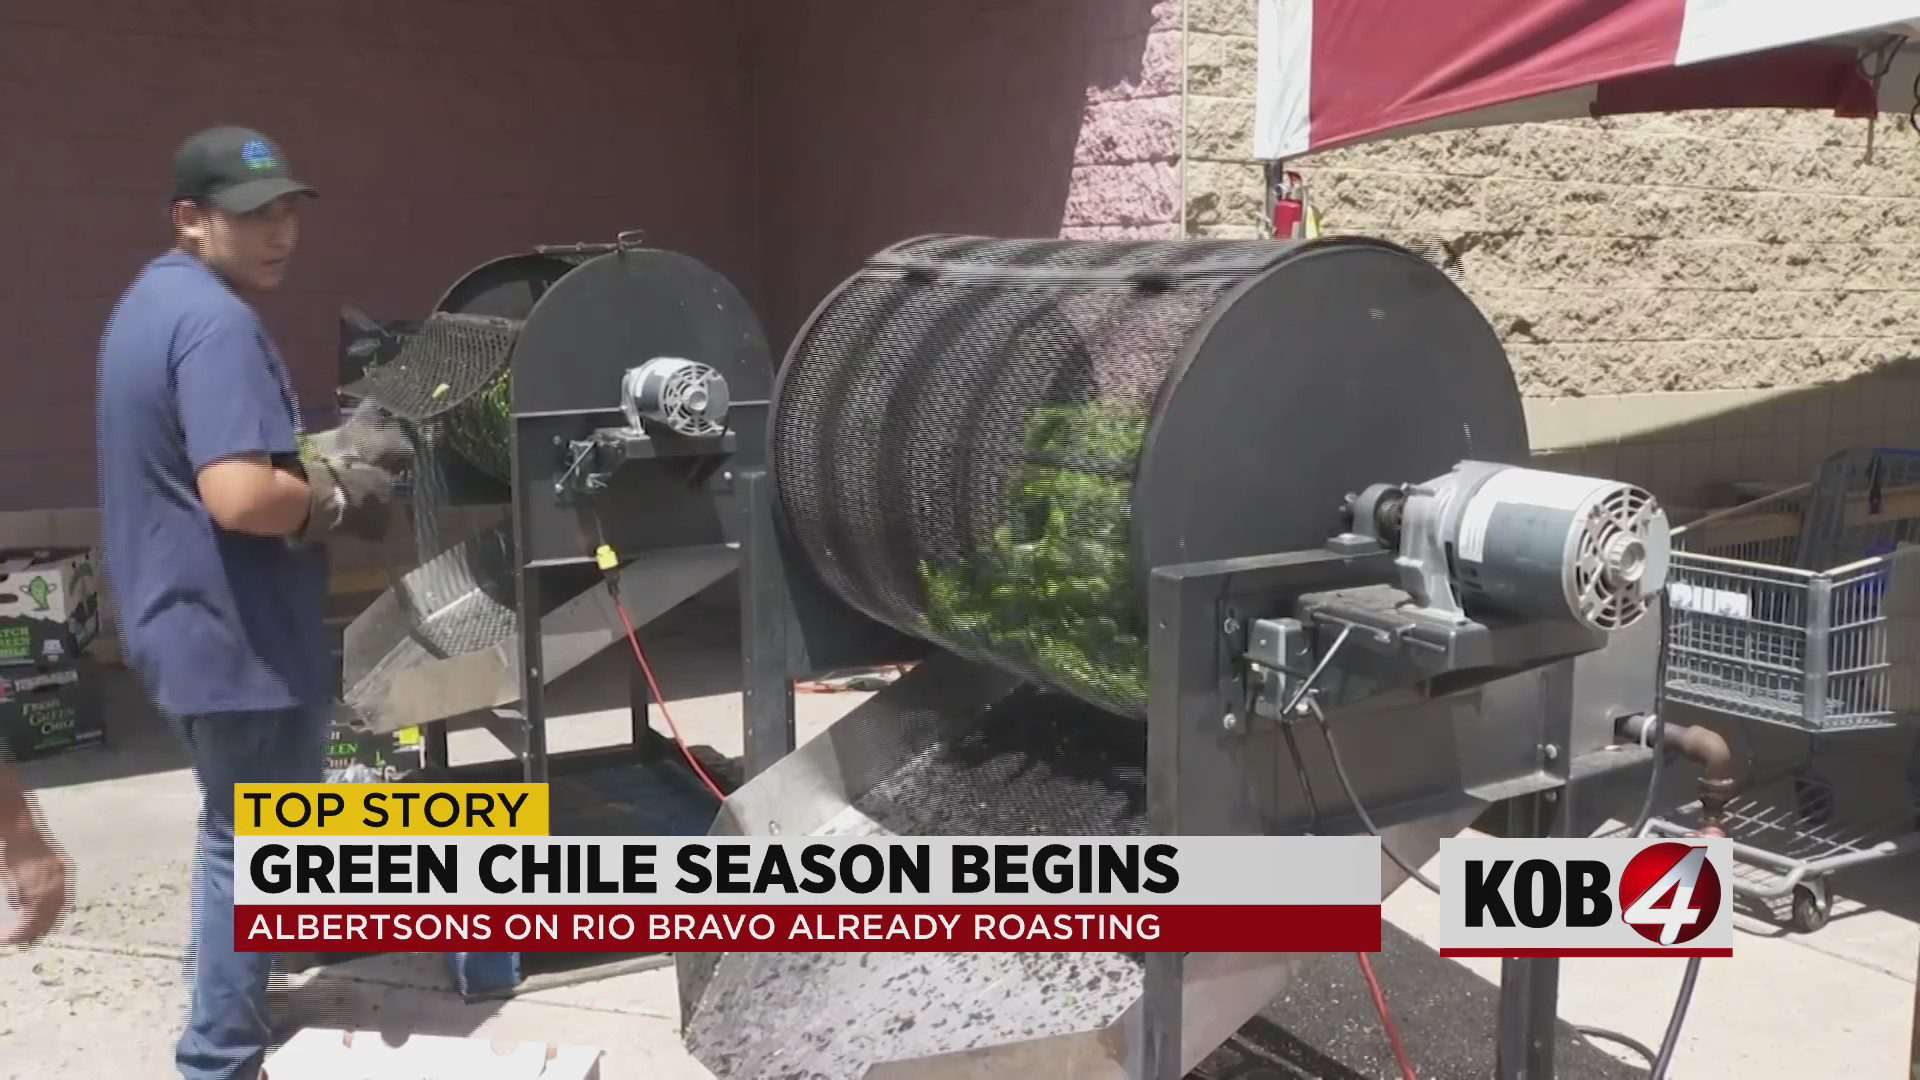 Comienza la temporada de asado de chile en Albuquerque